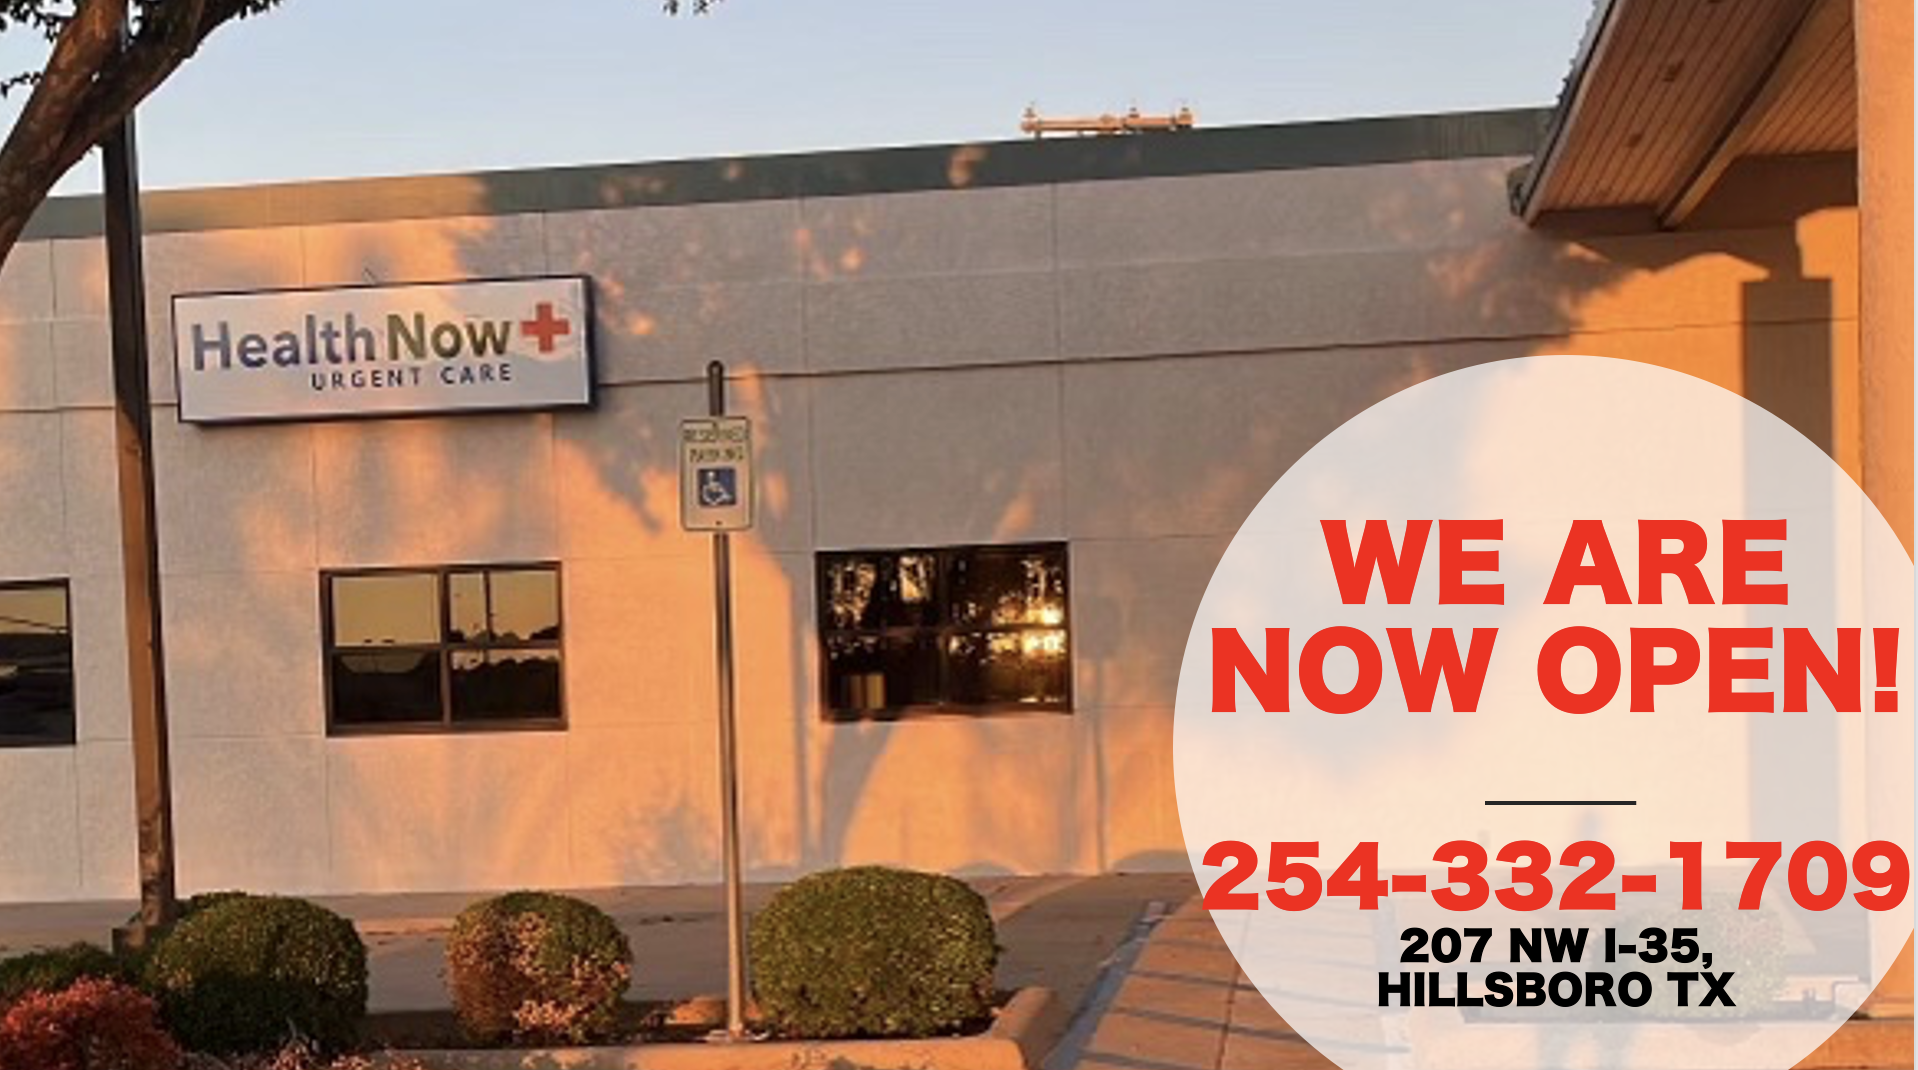 HealthNow Urgent Care - Hillsboro off I-35 207 I-35, Hillsboro Texas 76645